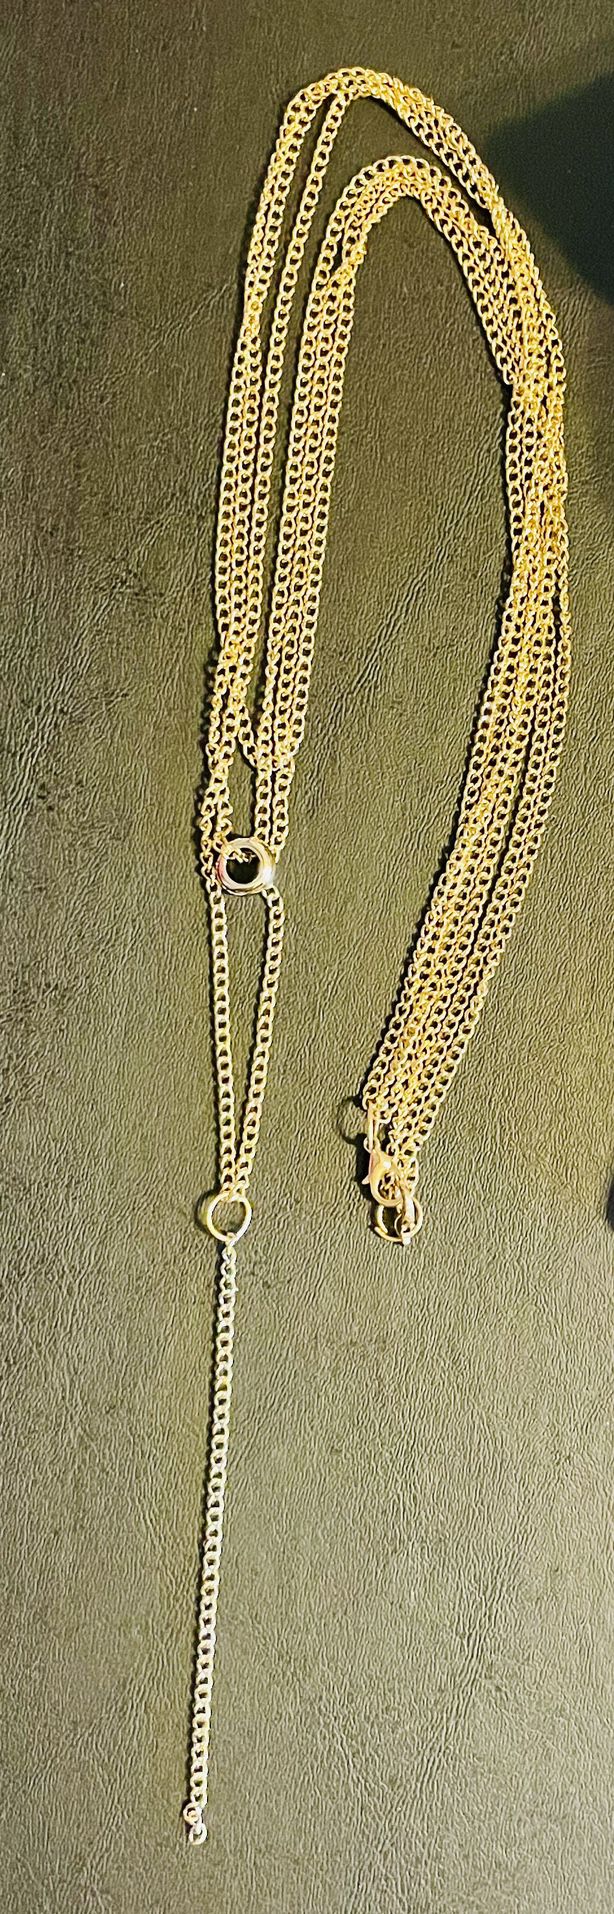 Multi strand Gold Tone Necklace 